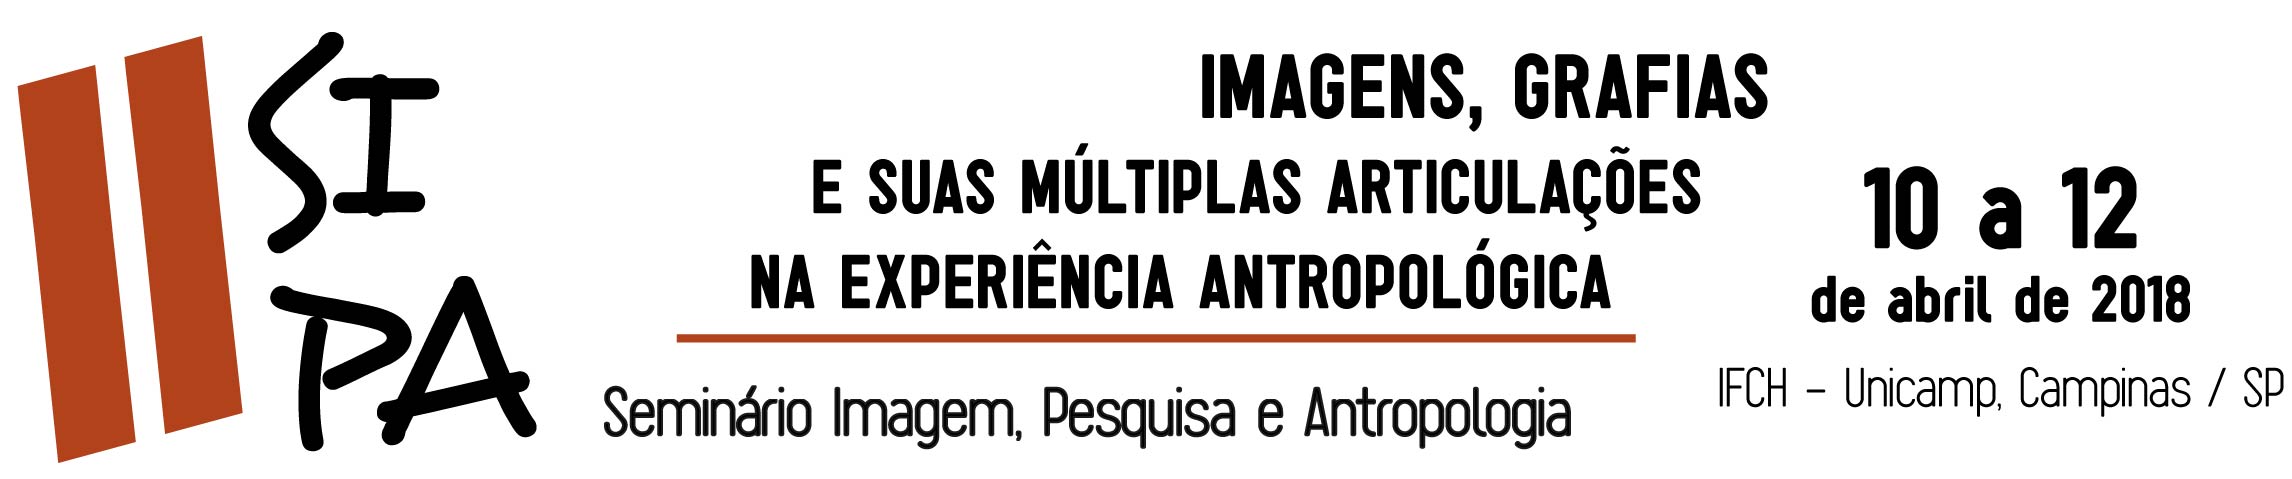 Seminário Imagem, Pesquisa e Antropologia (SIPA)